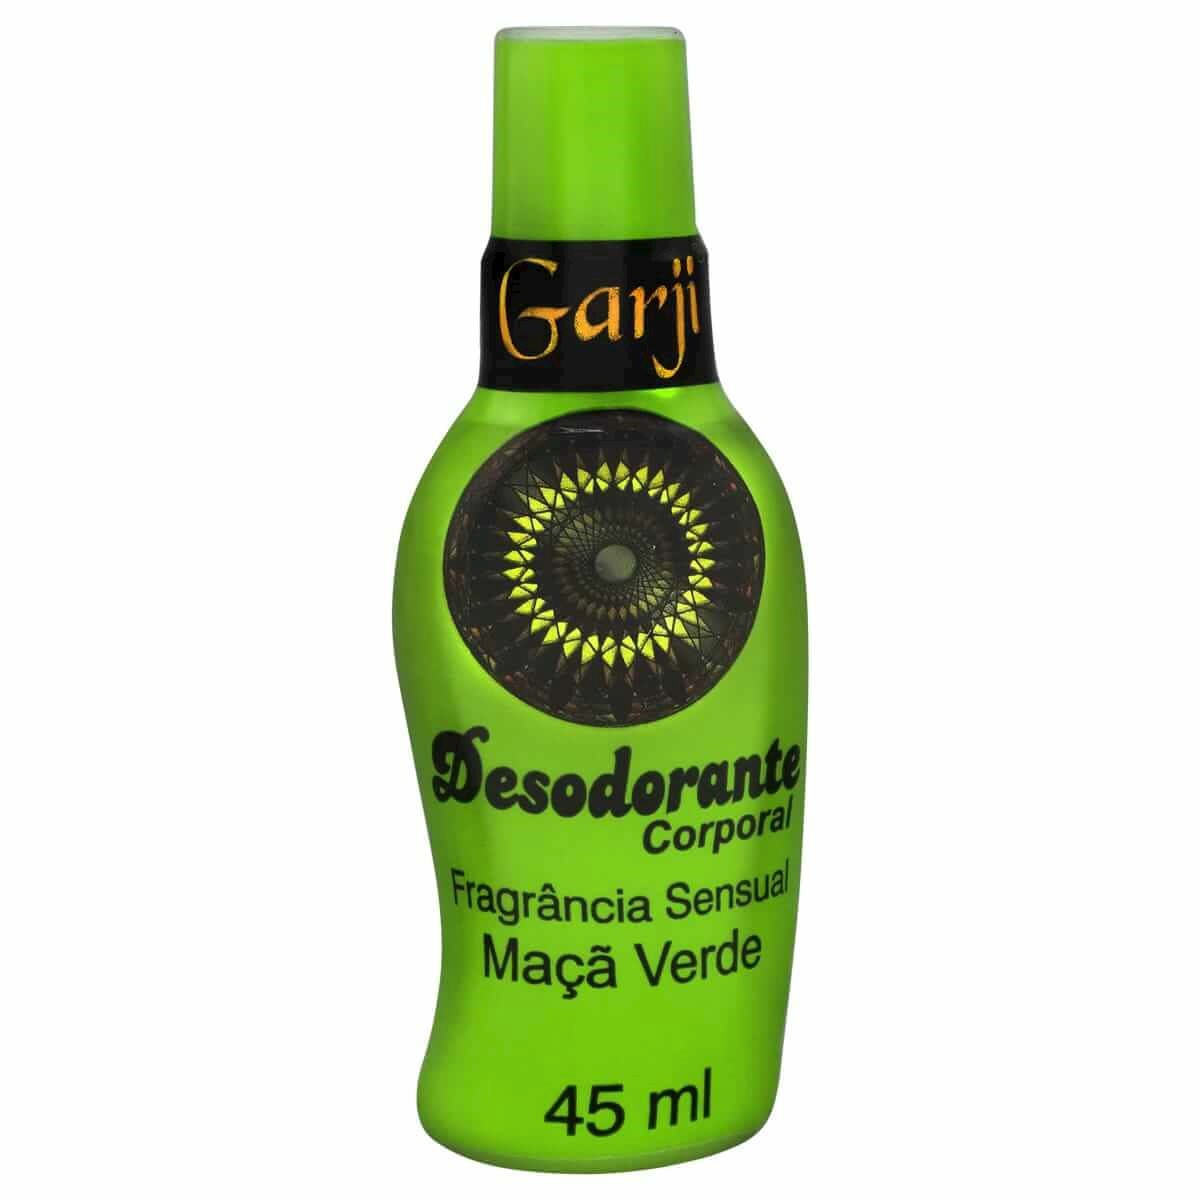 Desodorante Corporal de Maçã Verde 45ml Garji